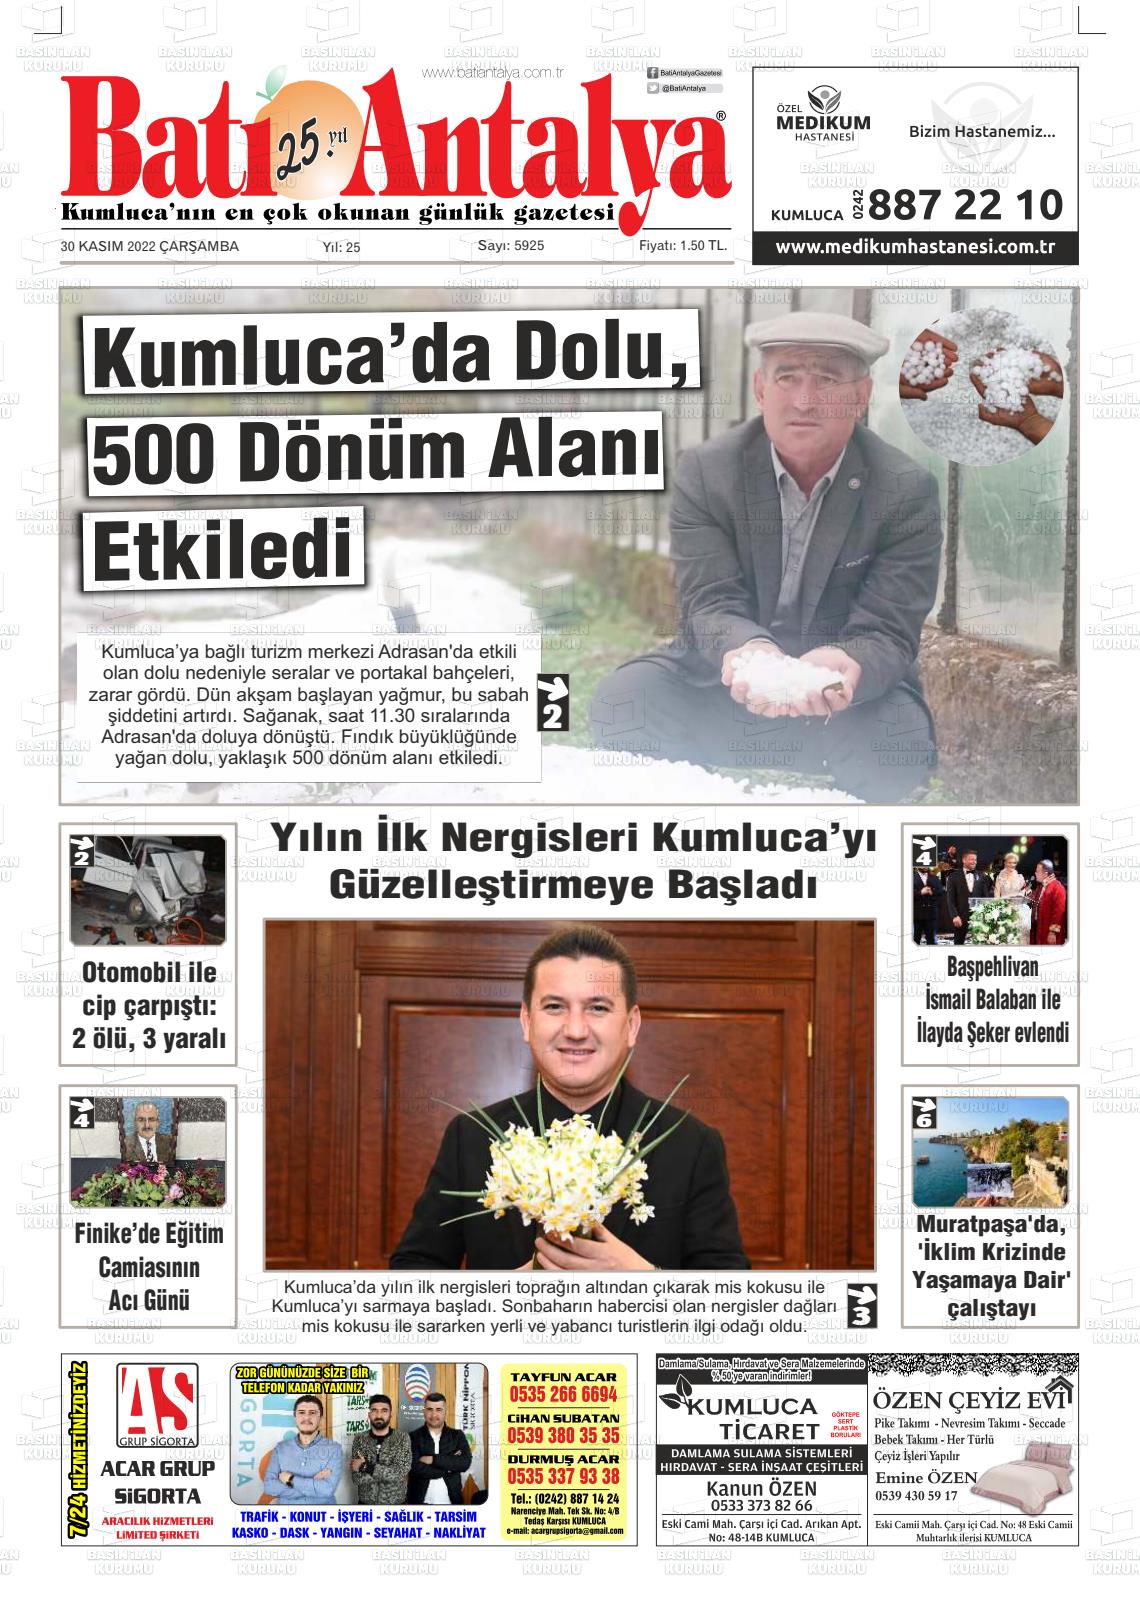 30 Kasım 2022 Batı Antalya Gazete Manşeti